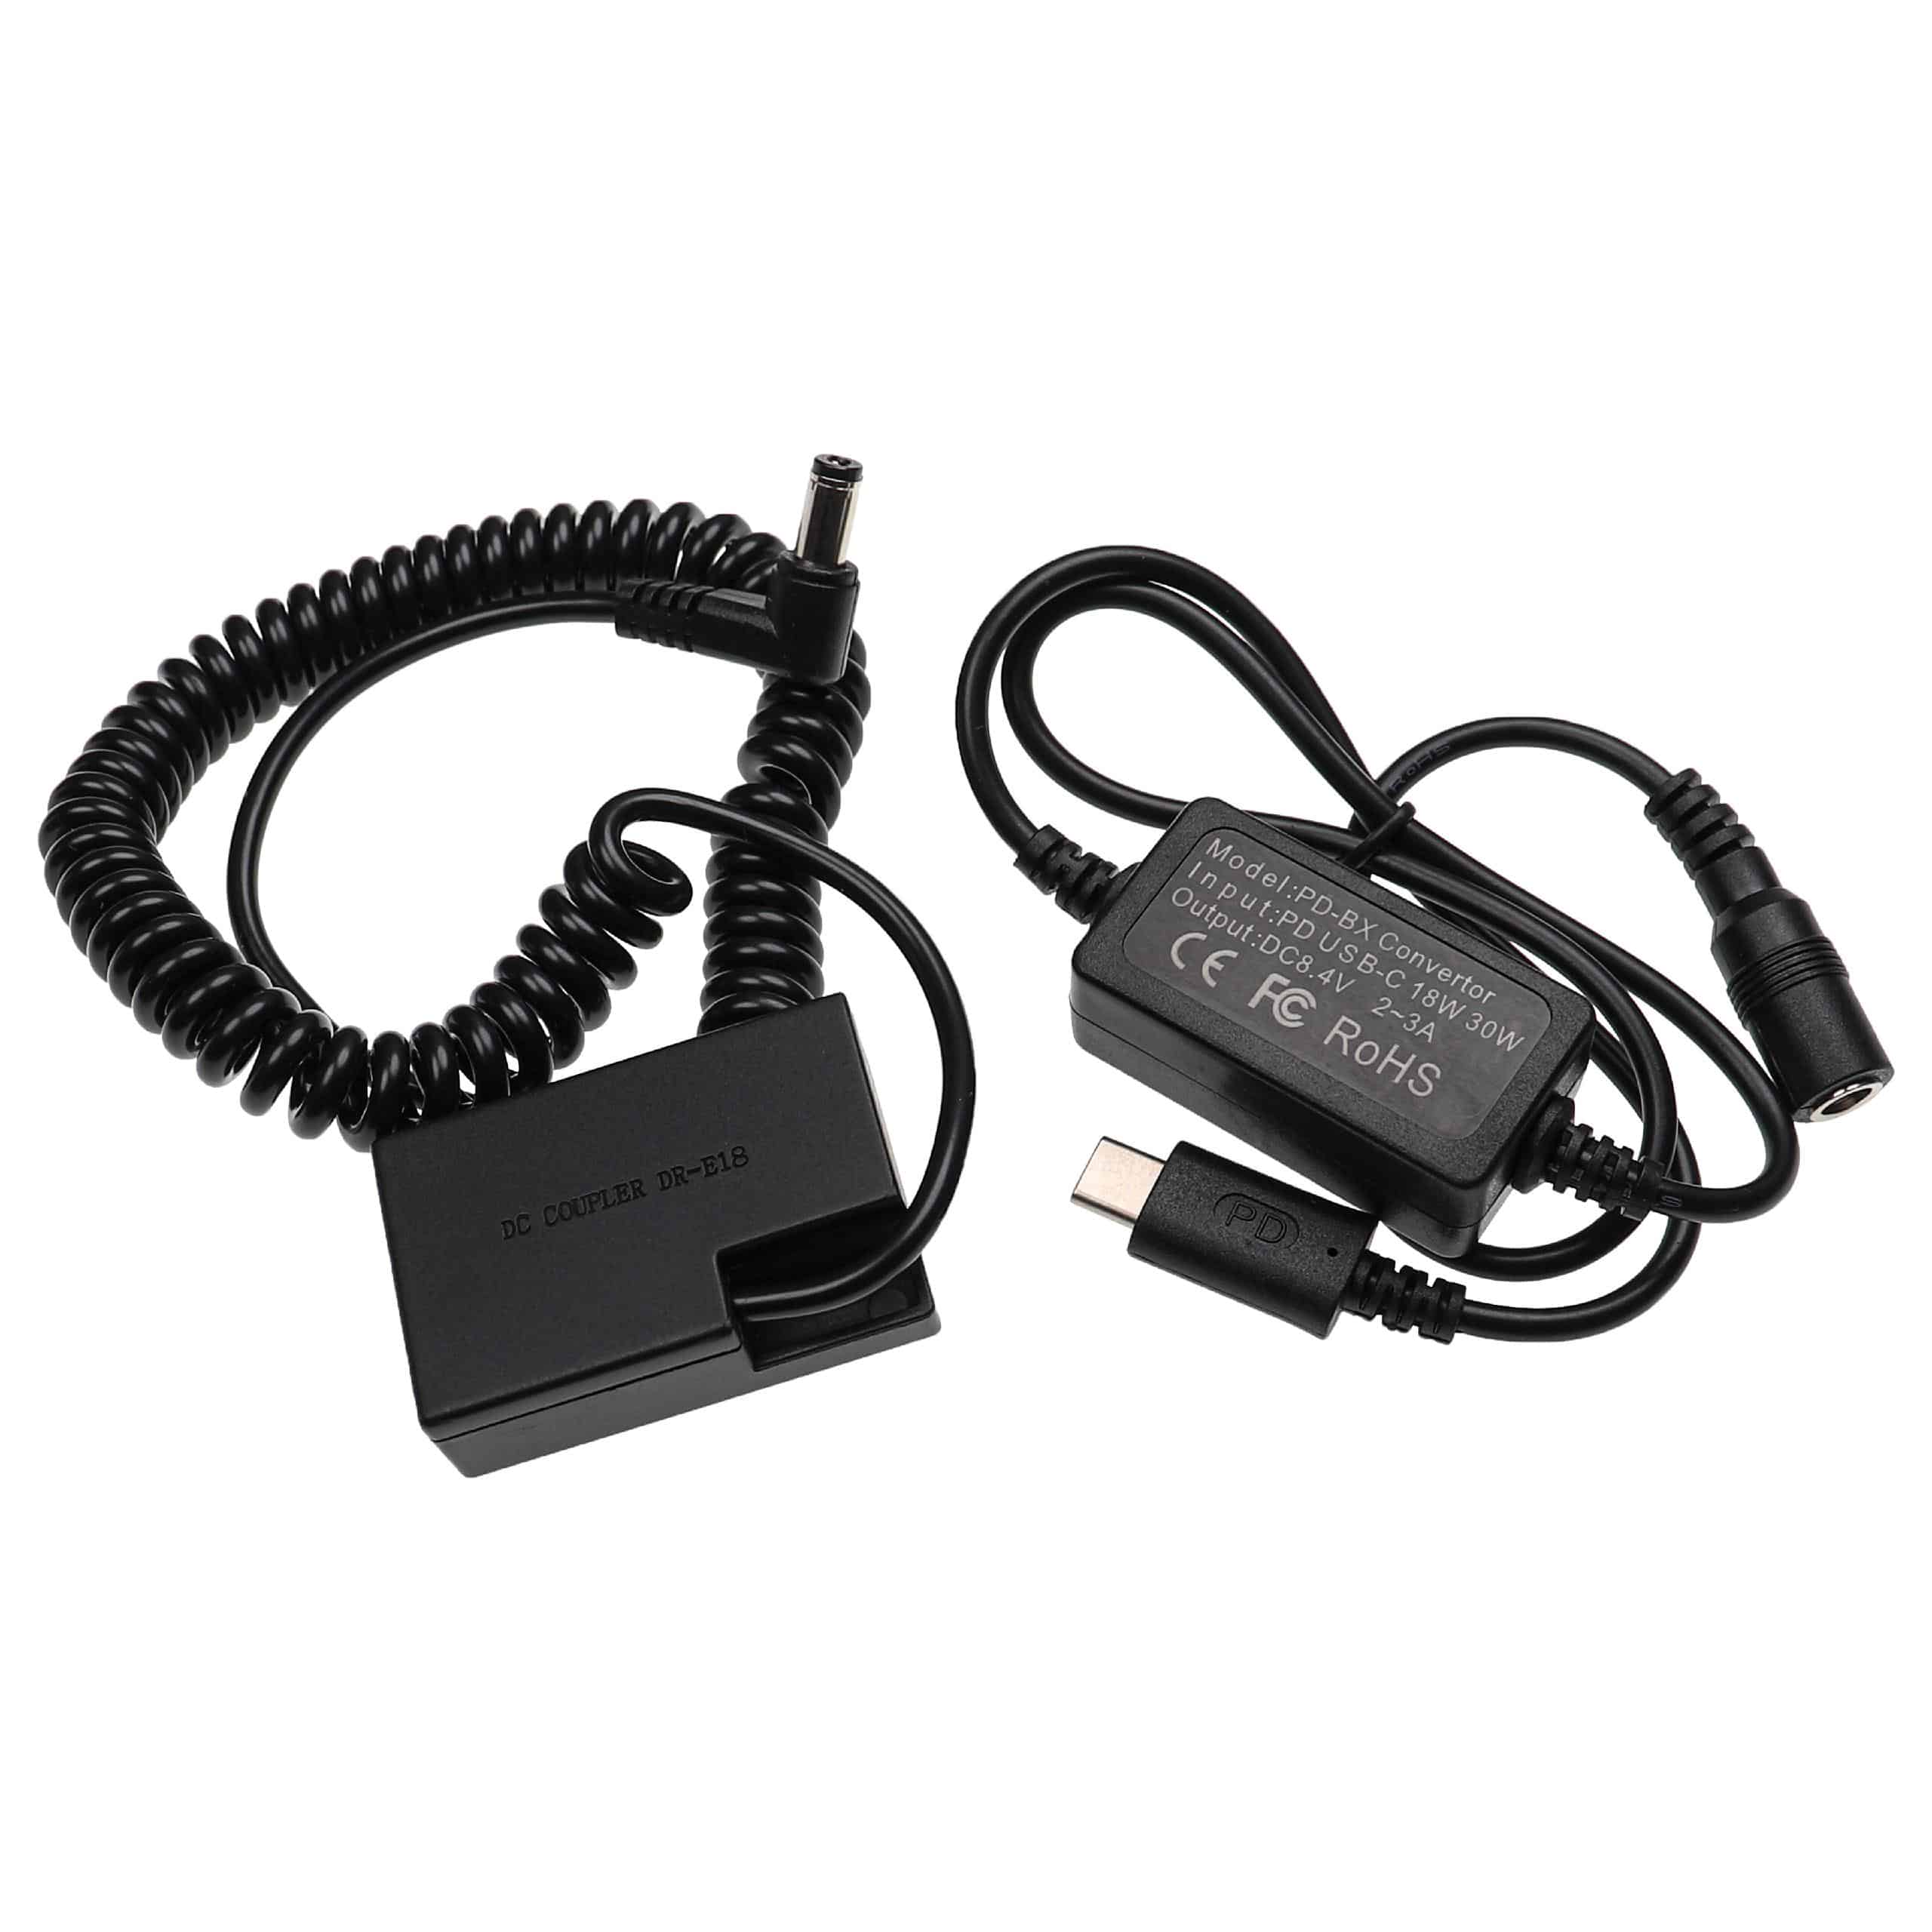 USB Power Supply replaces ACK-E18 for Camera + DC Coupler as Canon DR-E18 - 2 m, 8.4 V 3.0 A